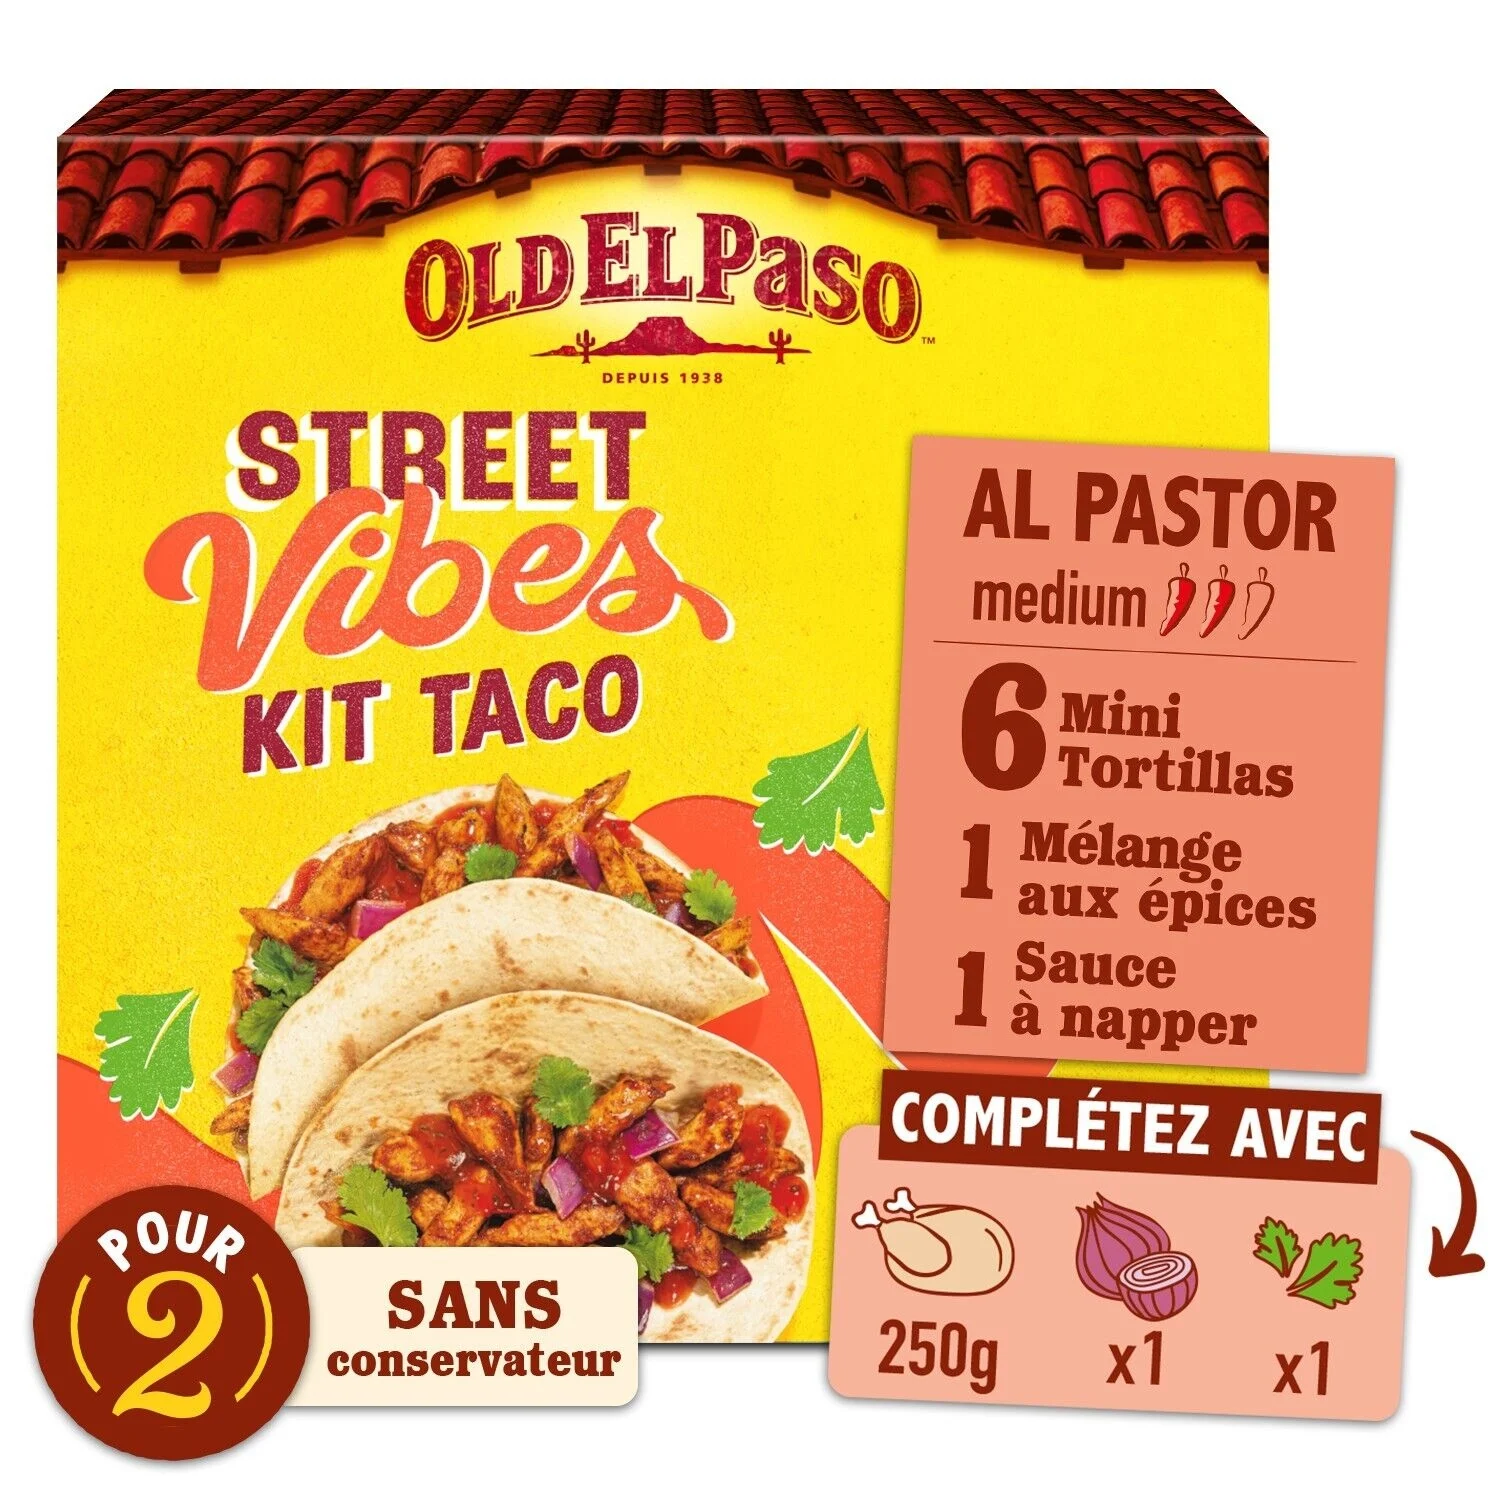 Tortillas Le Kit Taco 275g - Old El Paso